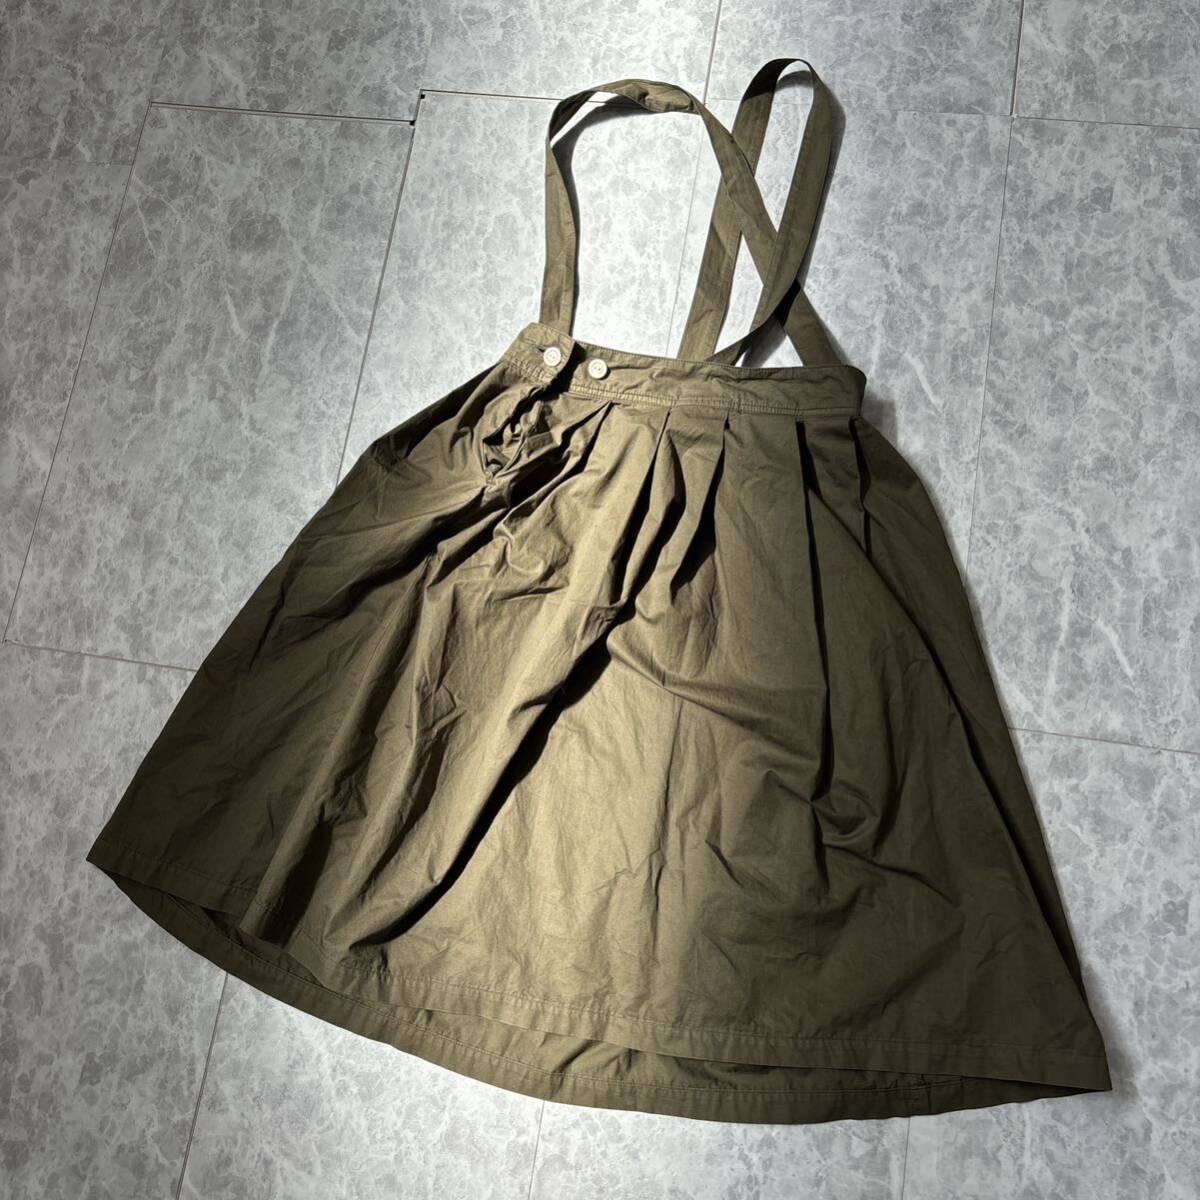 CC ＊ 良品 日本製 '人気モデル' MARKEY'S A BOND マーキーズ 上質コットン素材 サロペット スカート size1 レディース 婦人服 ボトムス_画像4